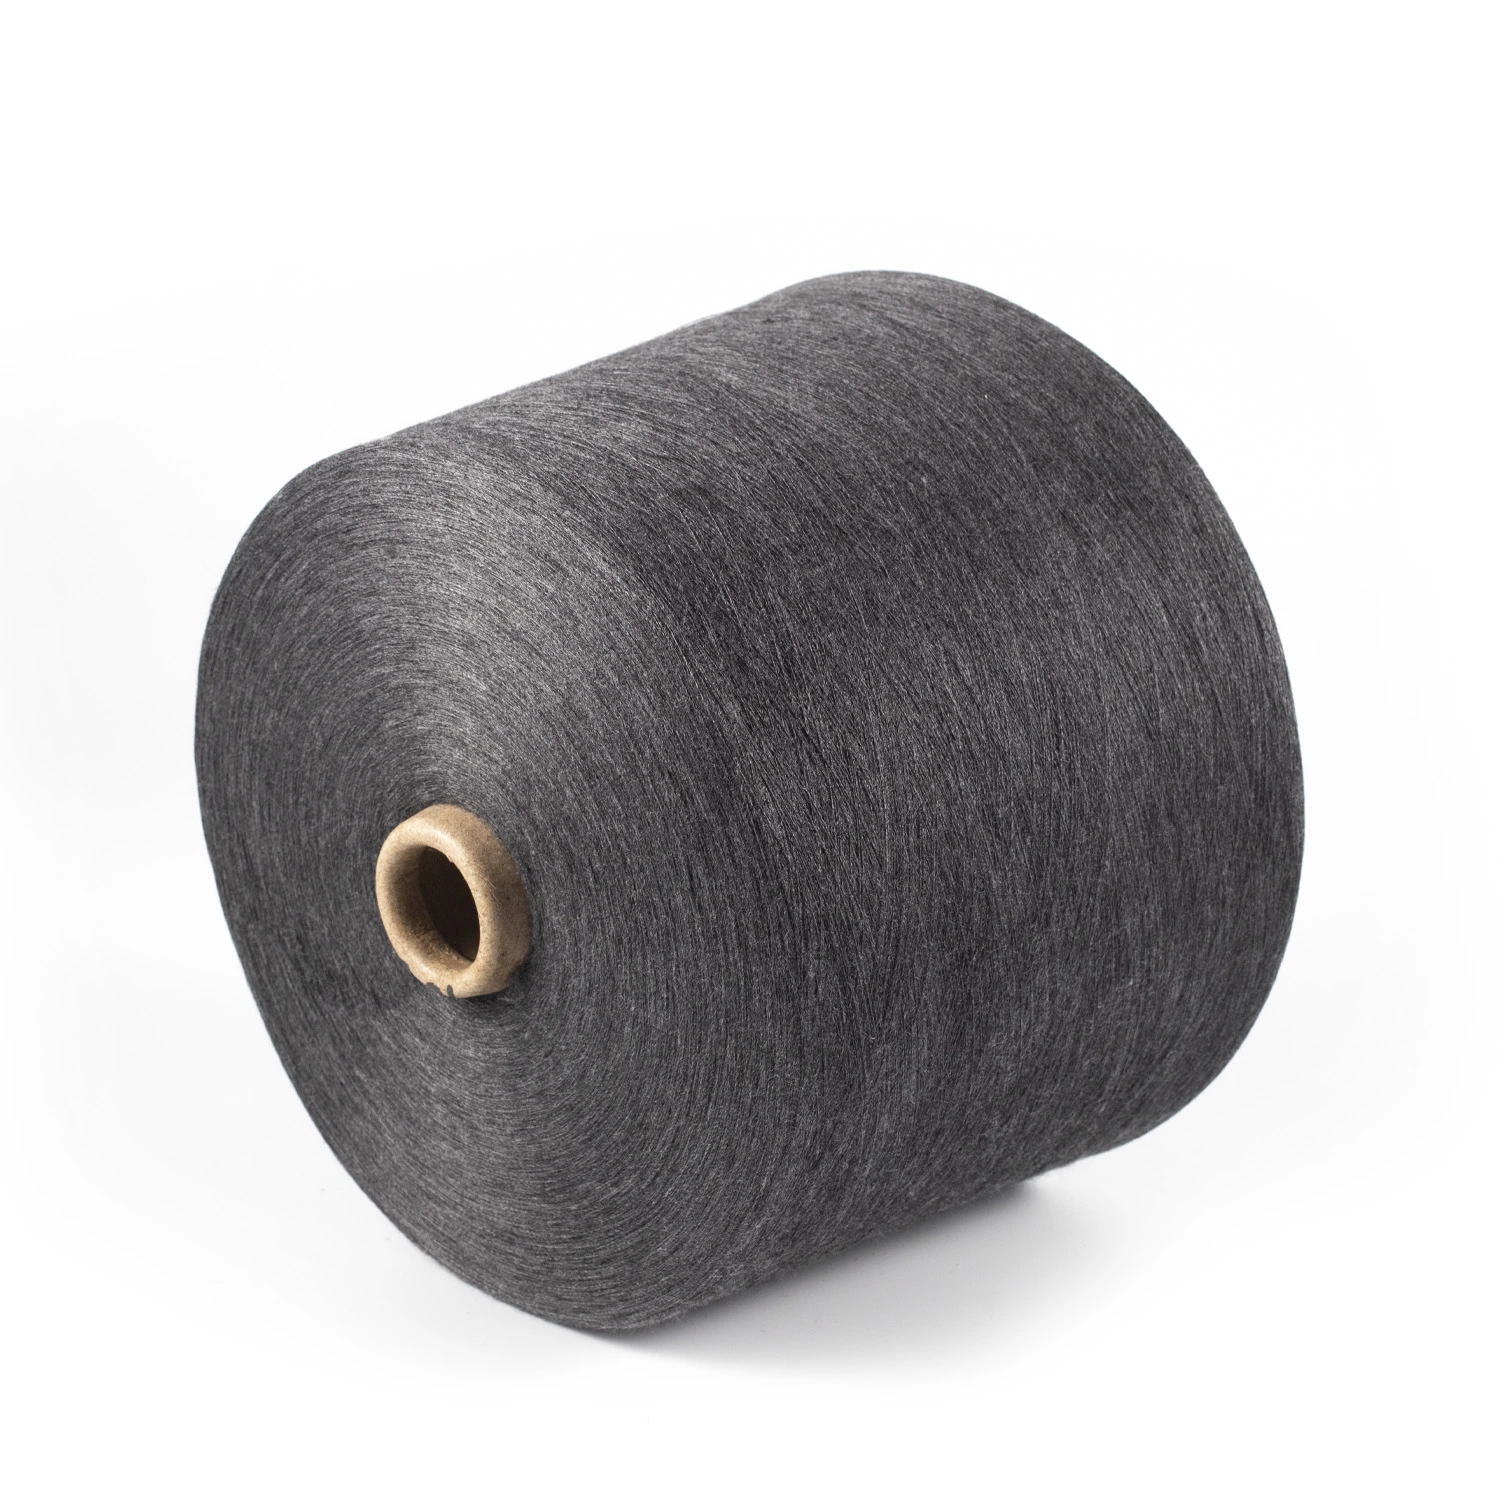 Xk Comercio al por mayor de tejido de hilo tejido de poliéster elástico/Spandex cubierto hilo para tejer los hilados de algodón